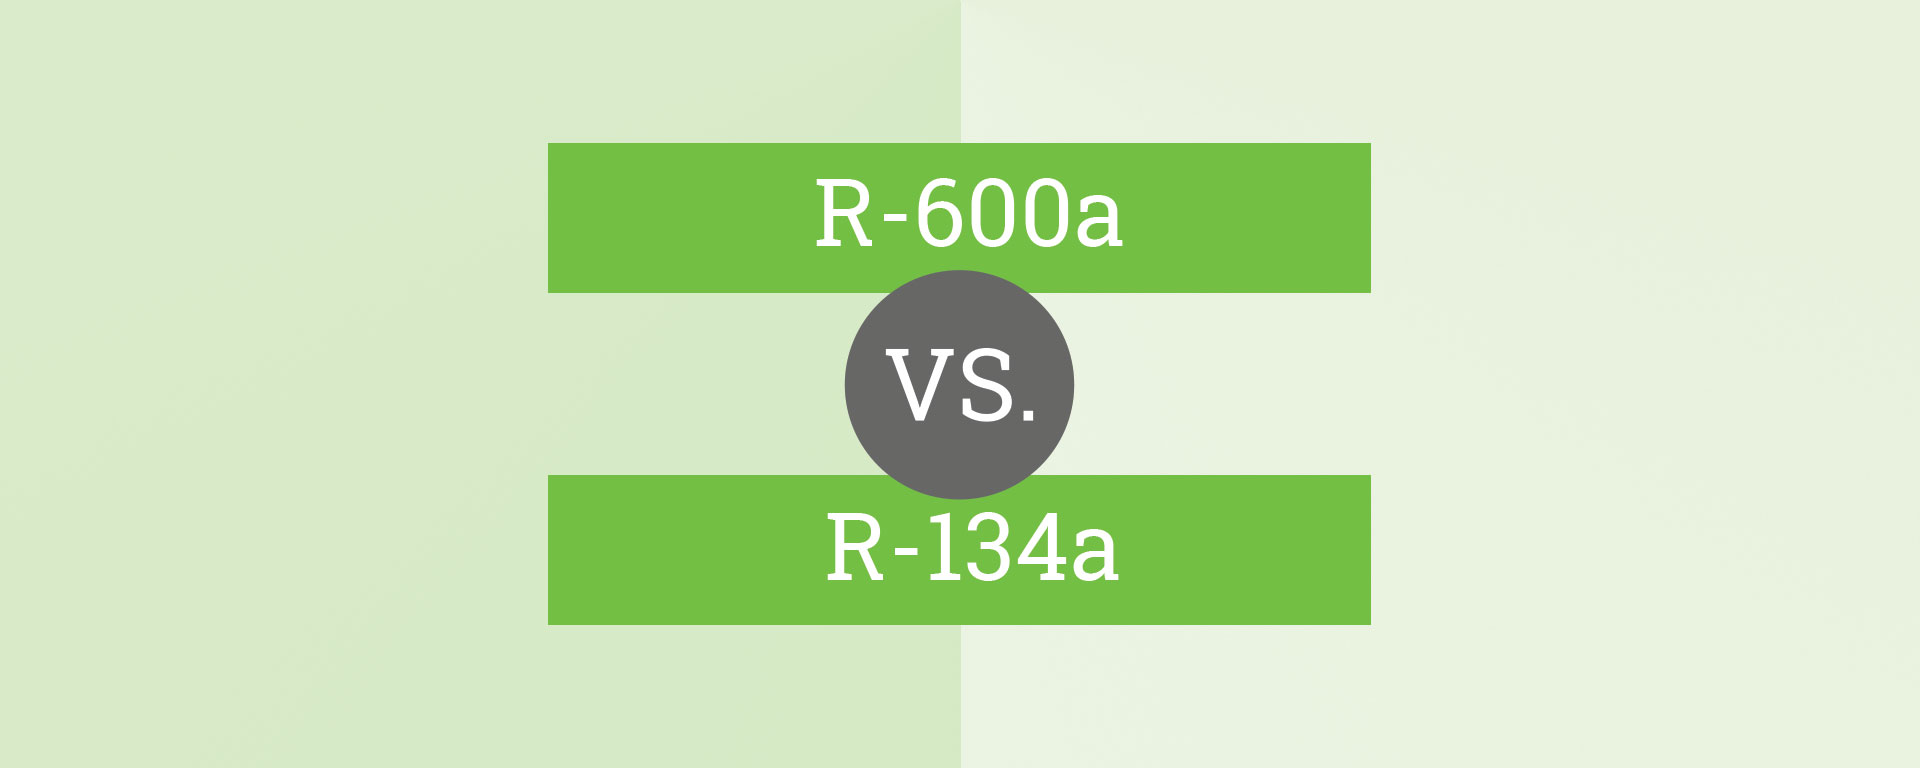 R-600a vs. R-134a